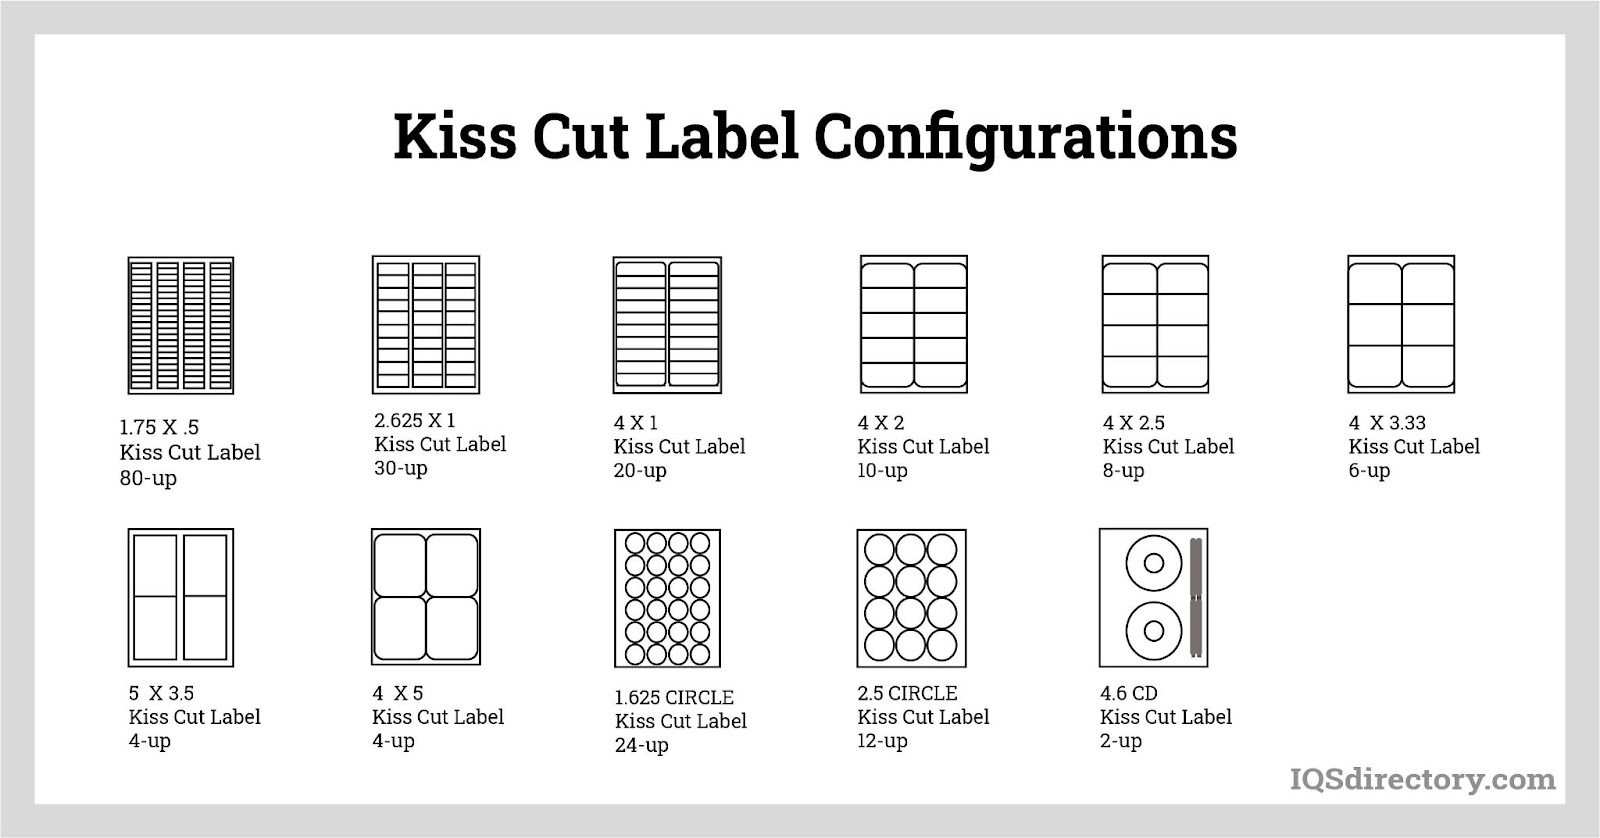 Kiss Cut Label Configurations